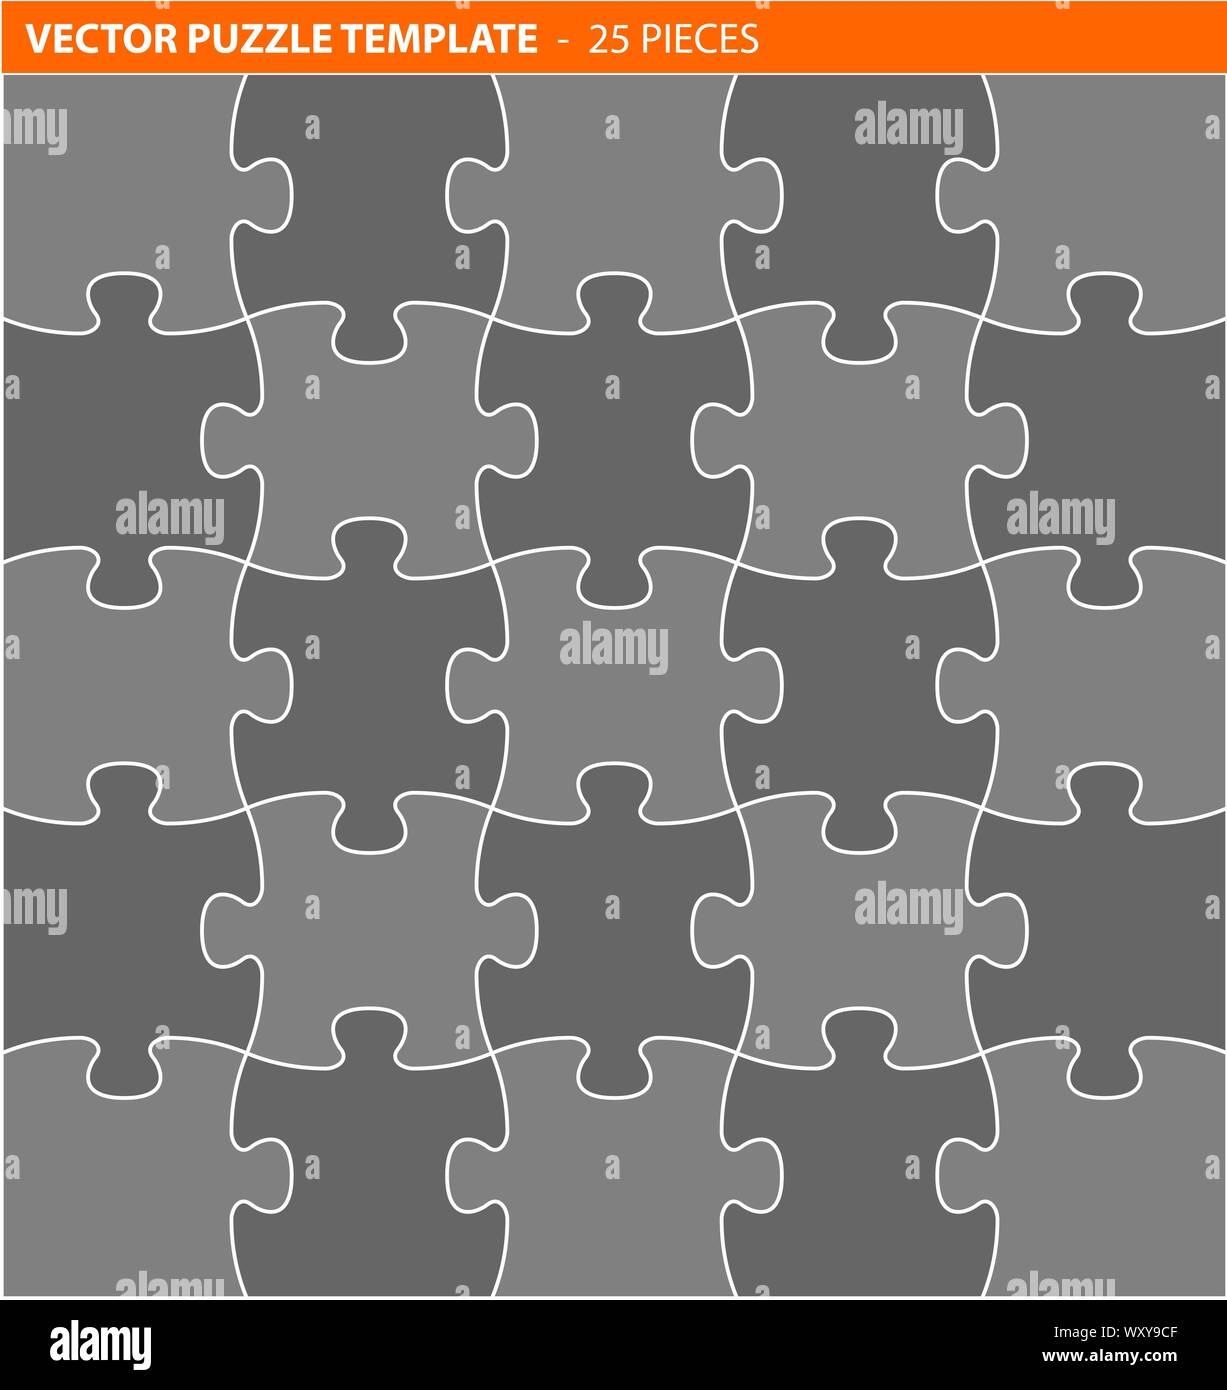 Jigsaw Puzzle / vector completo plantilla - 25 piezas Imagen Vector de  stock - Alamy